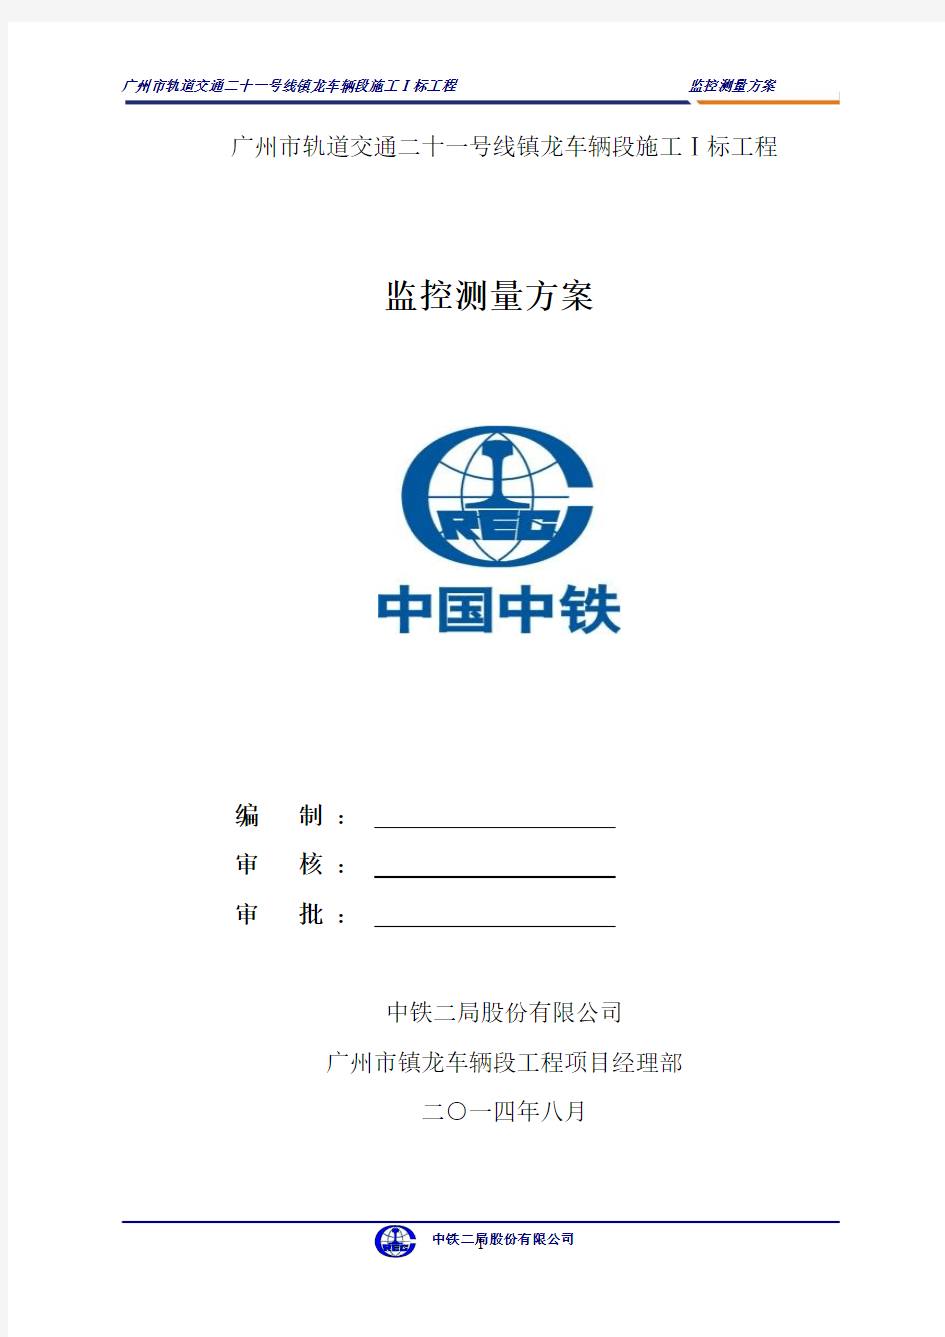 广州镇龙车辆段施工I标工程监控测量方案 (2)